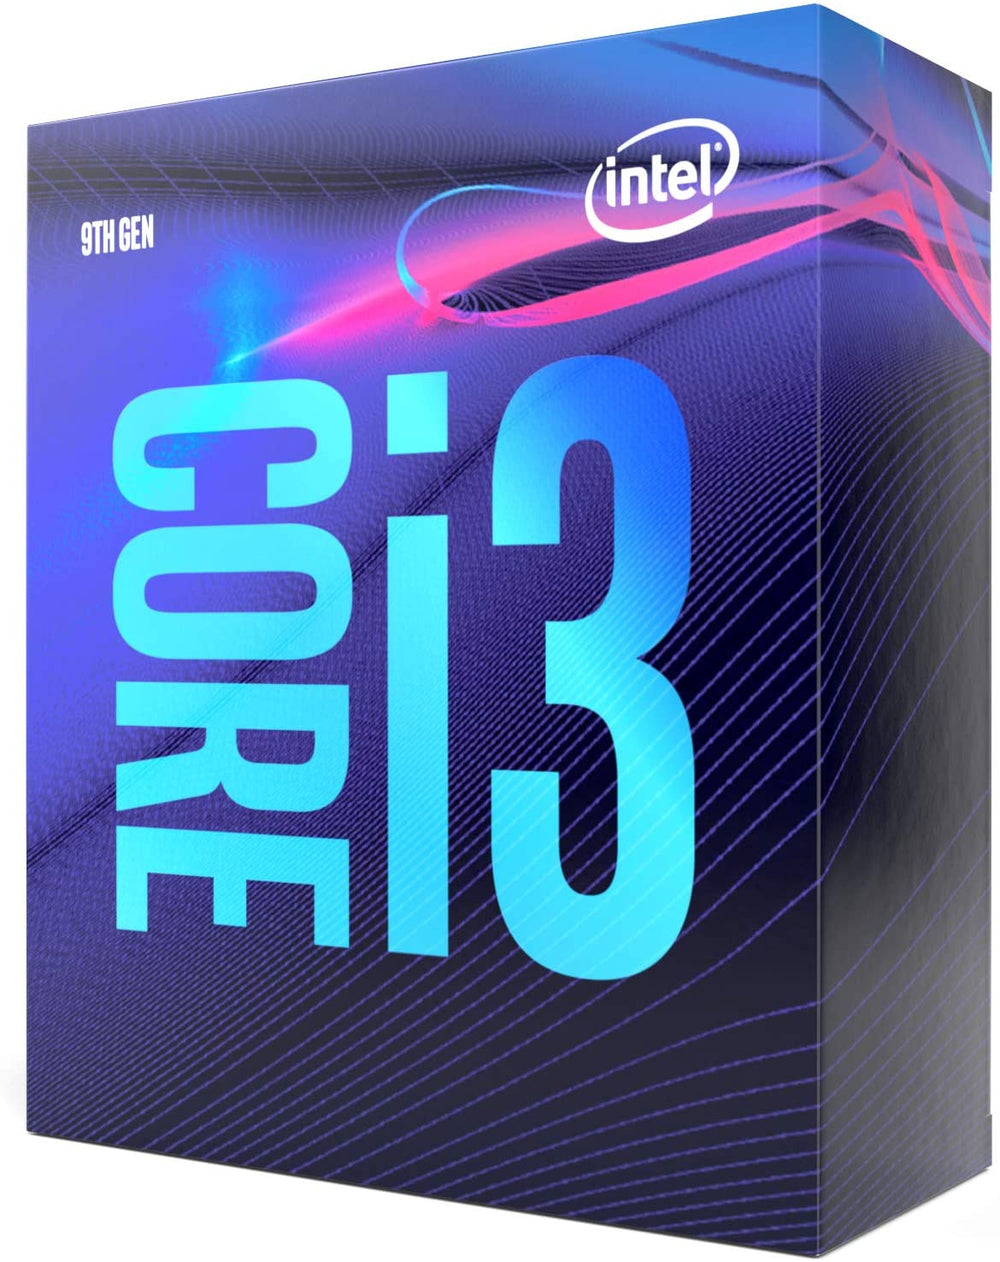 Intel® Core™ i3-9100 Desktop Processor 4-Core 4-Thread up to 4.2 GHz LGA 1151 300 Series (BX80684I39100)